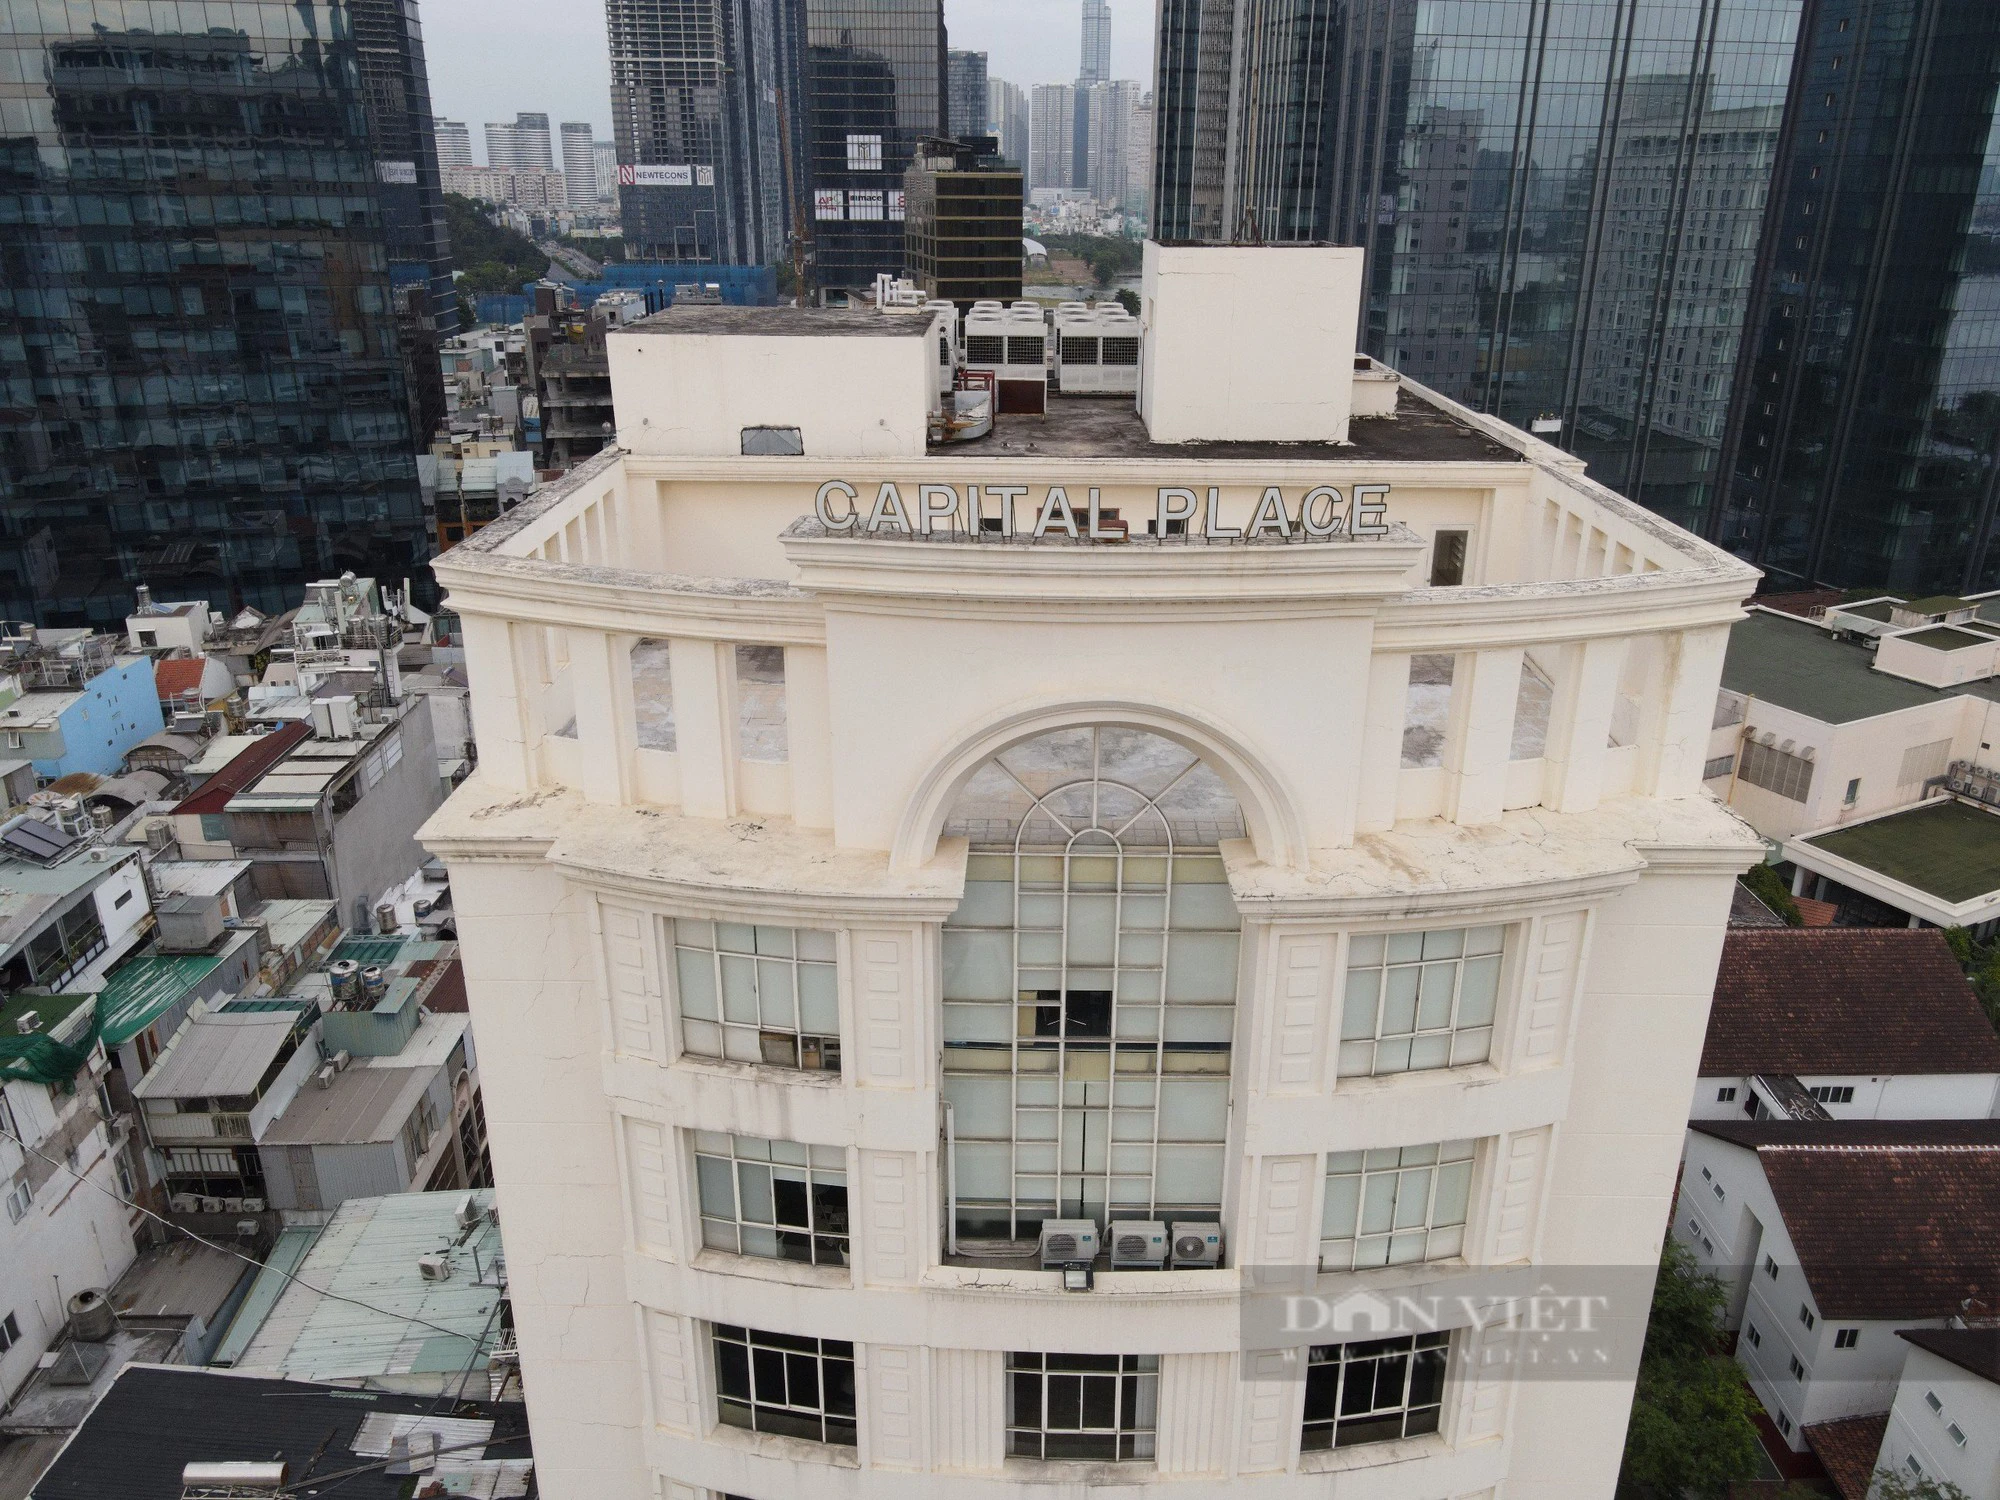 Hình ảnh cao ốc Capital Palace Tower xây dựng trái phép trong 18 năm, chuẩn bị tháo dỡ ở quận giàu nhất TP.HCM  - Ảnh 2.